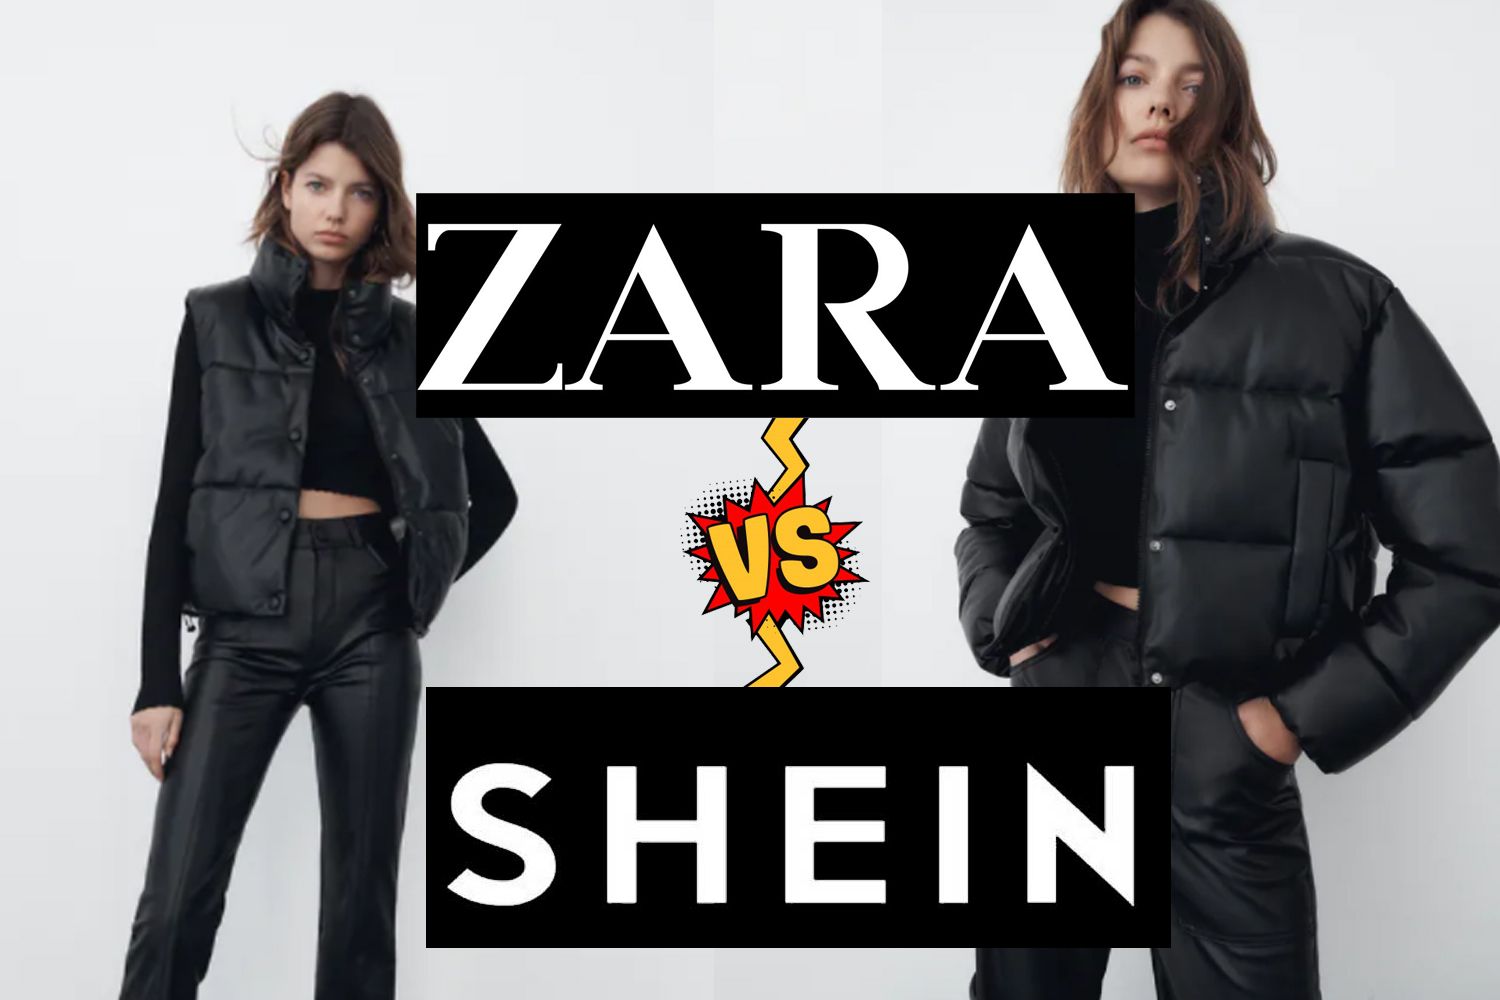 O que significam os símbolos das etiquetas da roupa da Zara